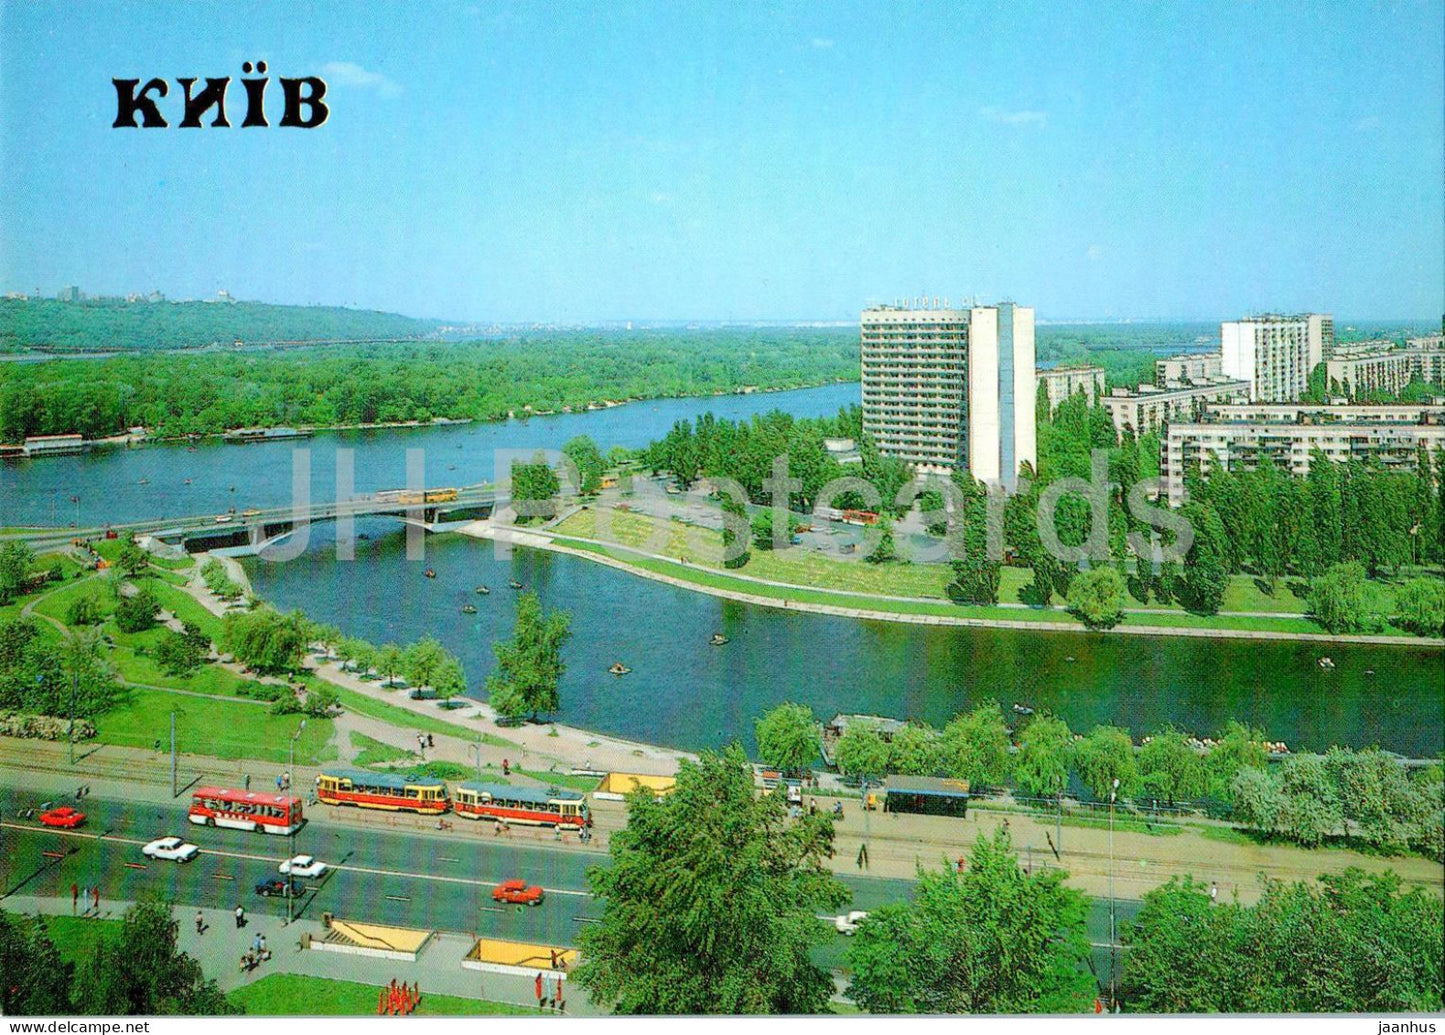 Kyiv - Kiev - Rusanovka residential area - bus Ikarus - tram - 1990 - Ukraine USSR - unused - JH Postcards